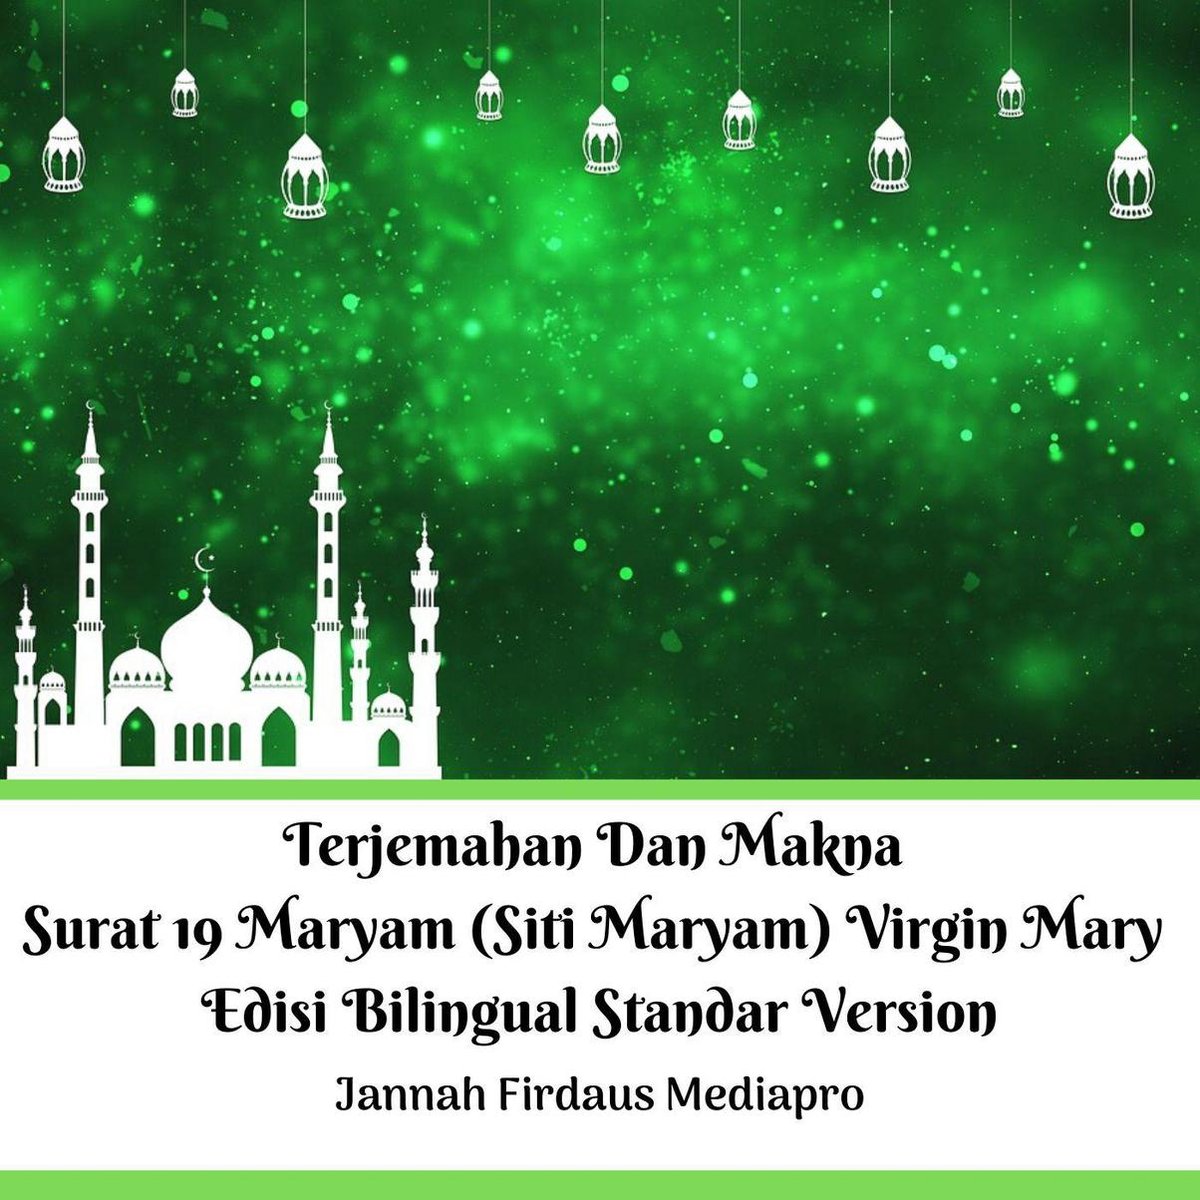 Terjemahan Dan Makna Surat 19 Maryam (Siti Maryam) Virgin Mary Edisi Bilingual Standar Version - Jannah Firdaus Mediapro